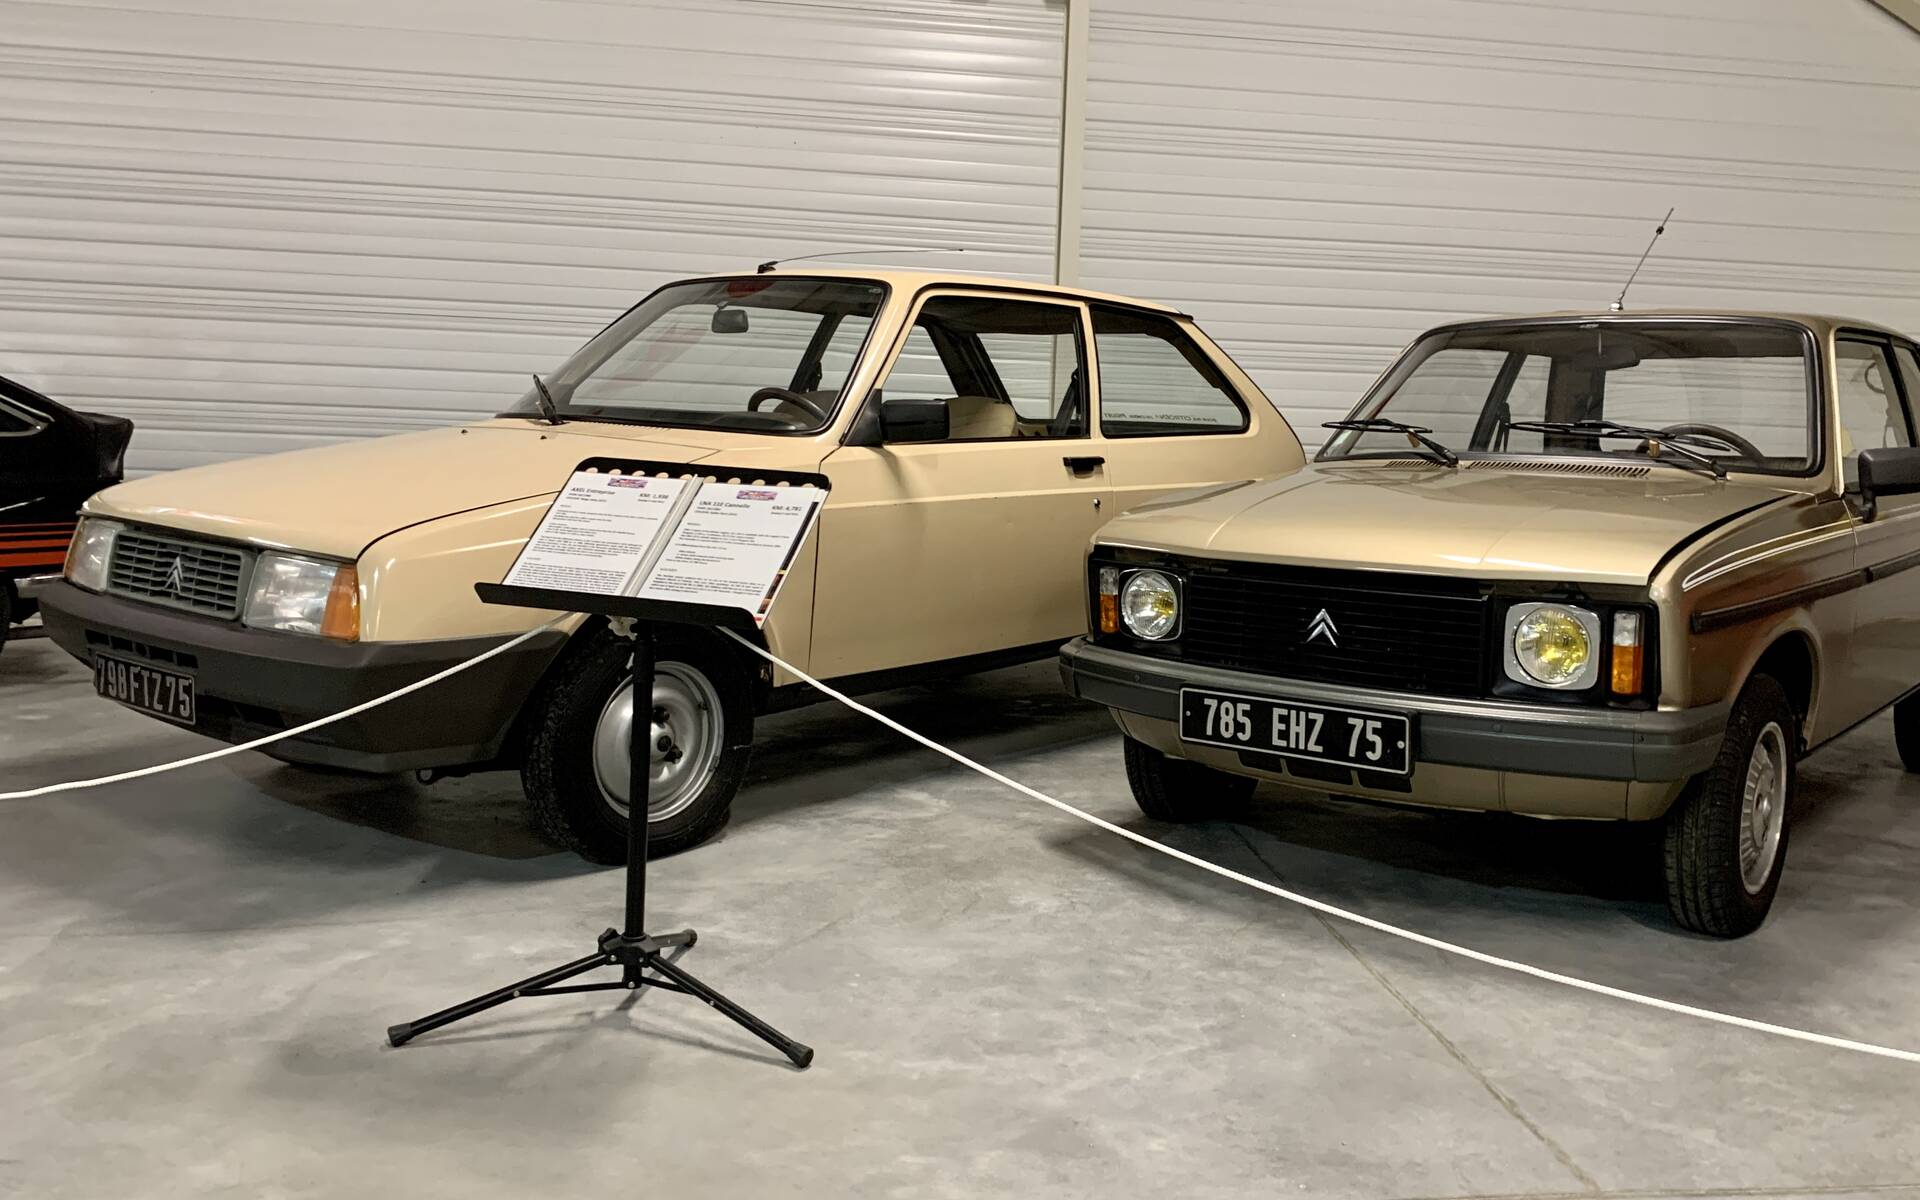 Photos: plus de 100 Citroën d'exception réunies dans un musée en France 543101-photos-plus-de-100-citroen-d-exception-reunies-dans-un-musee-en-france